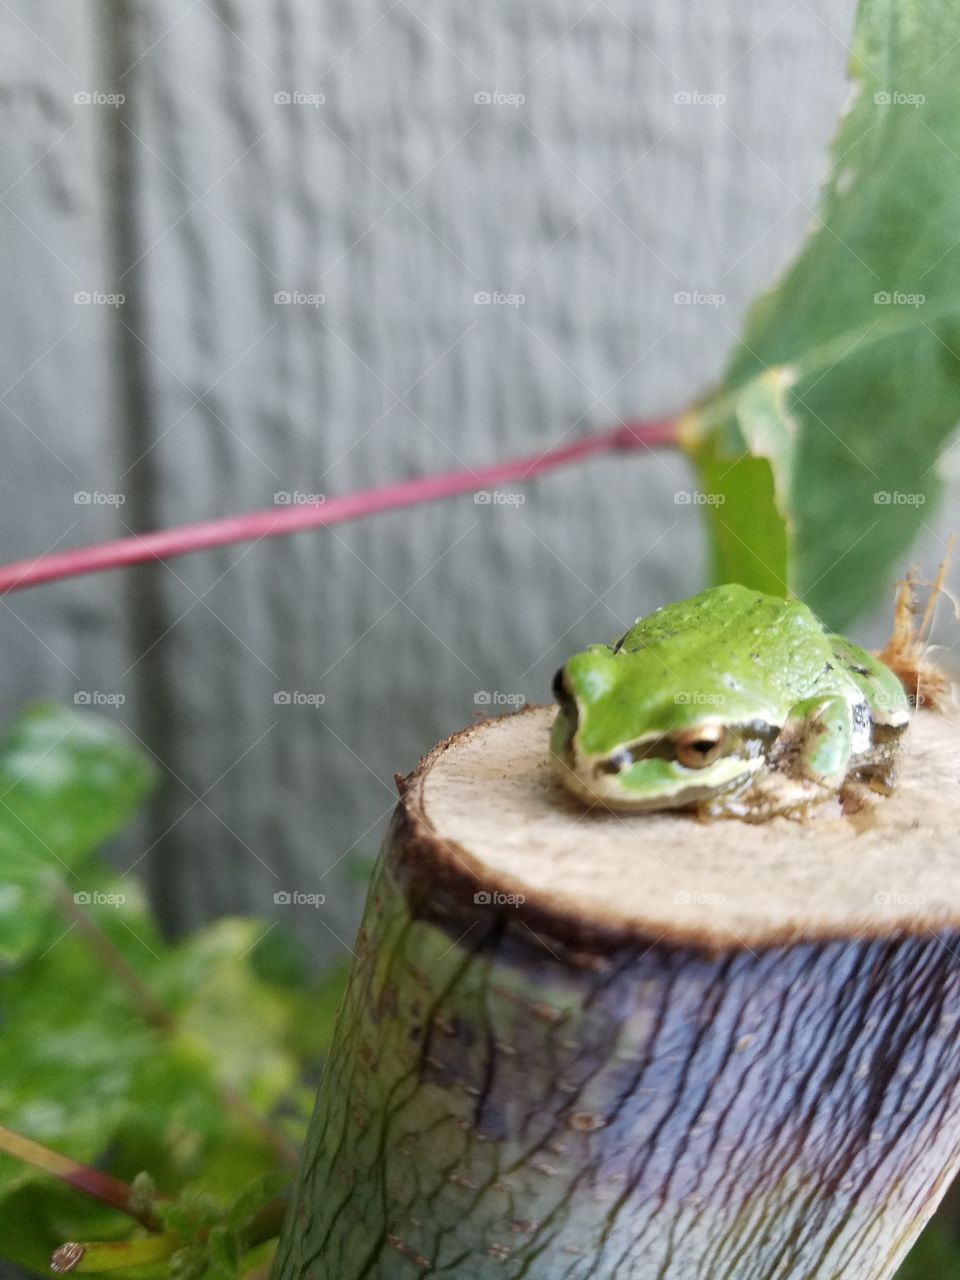 cute frog